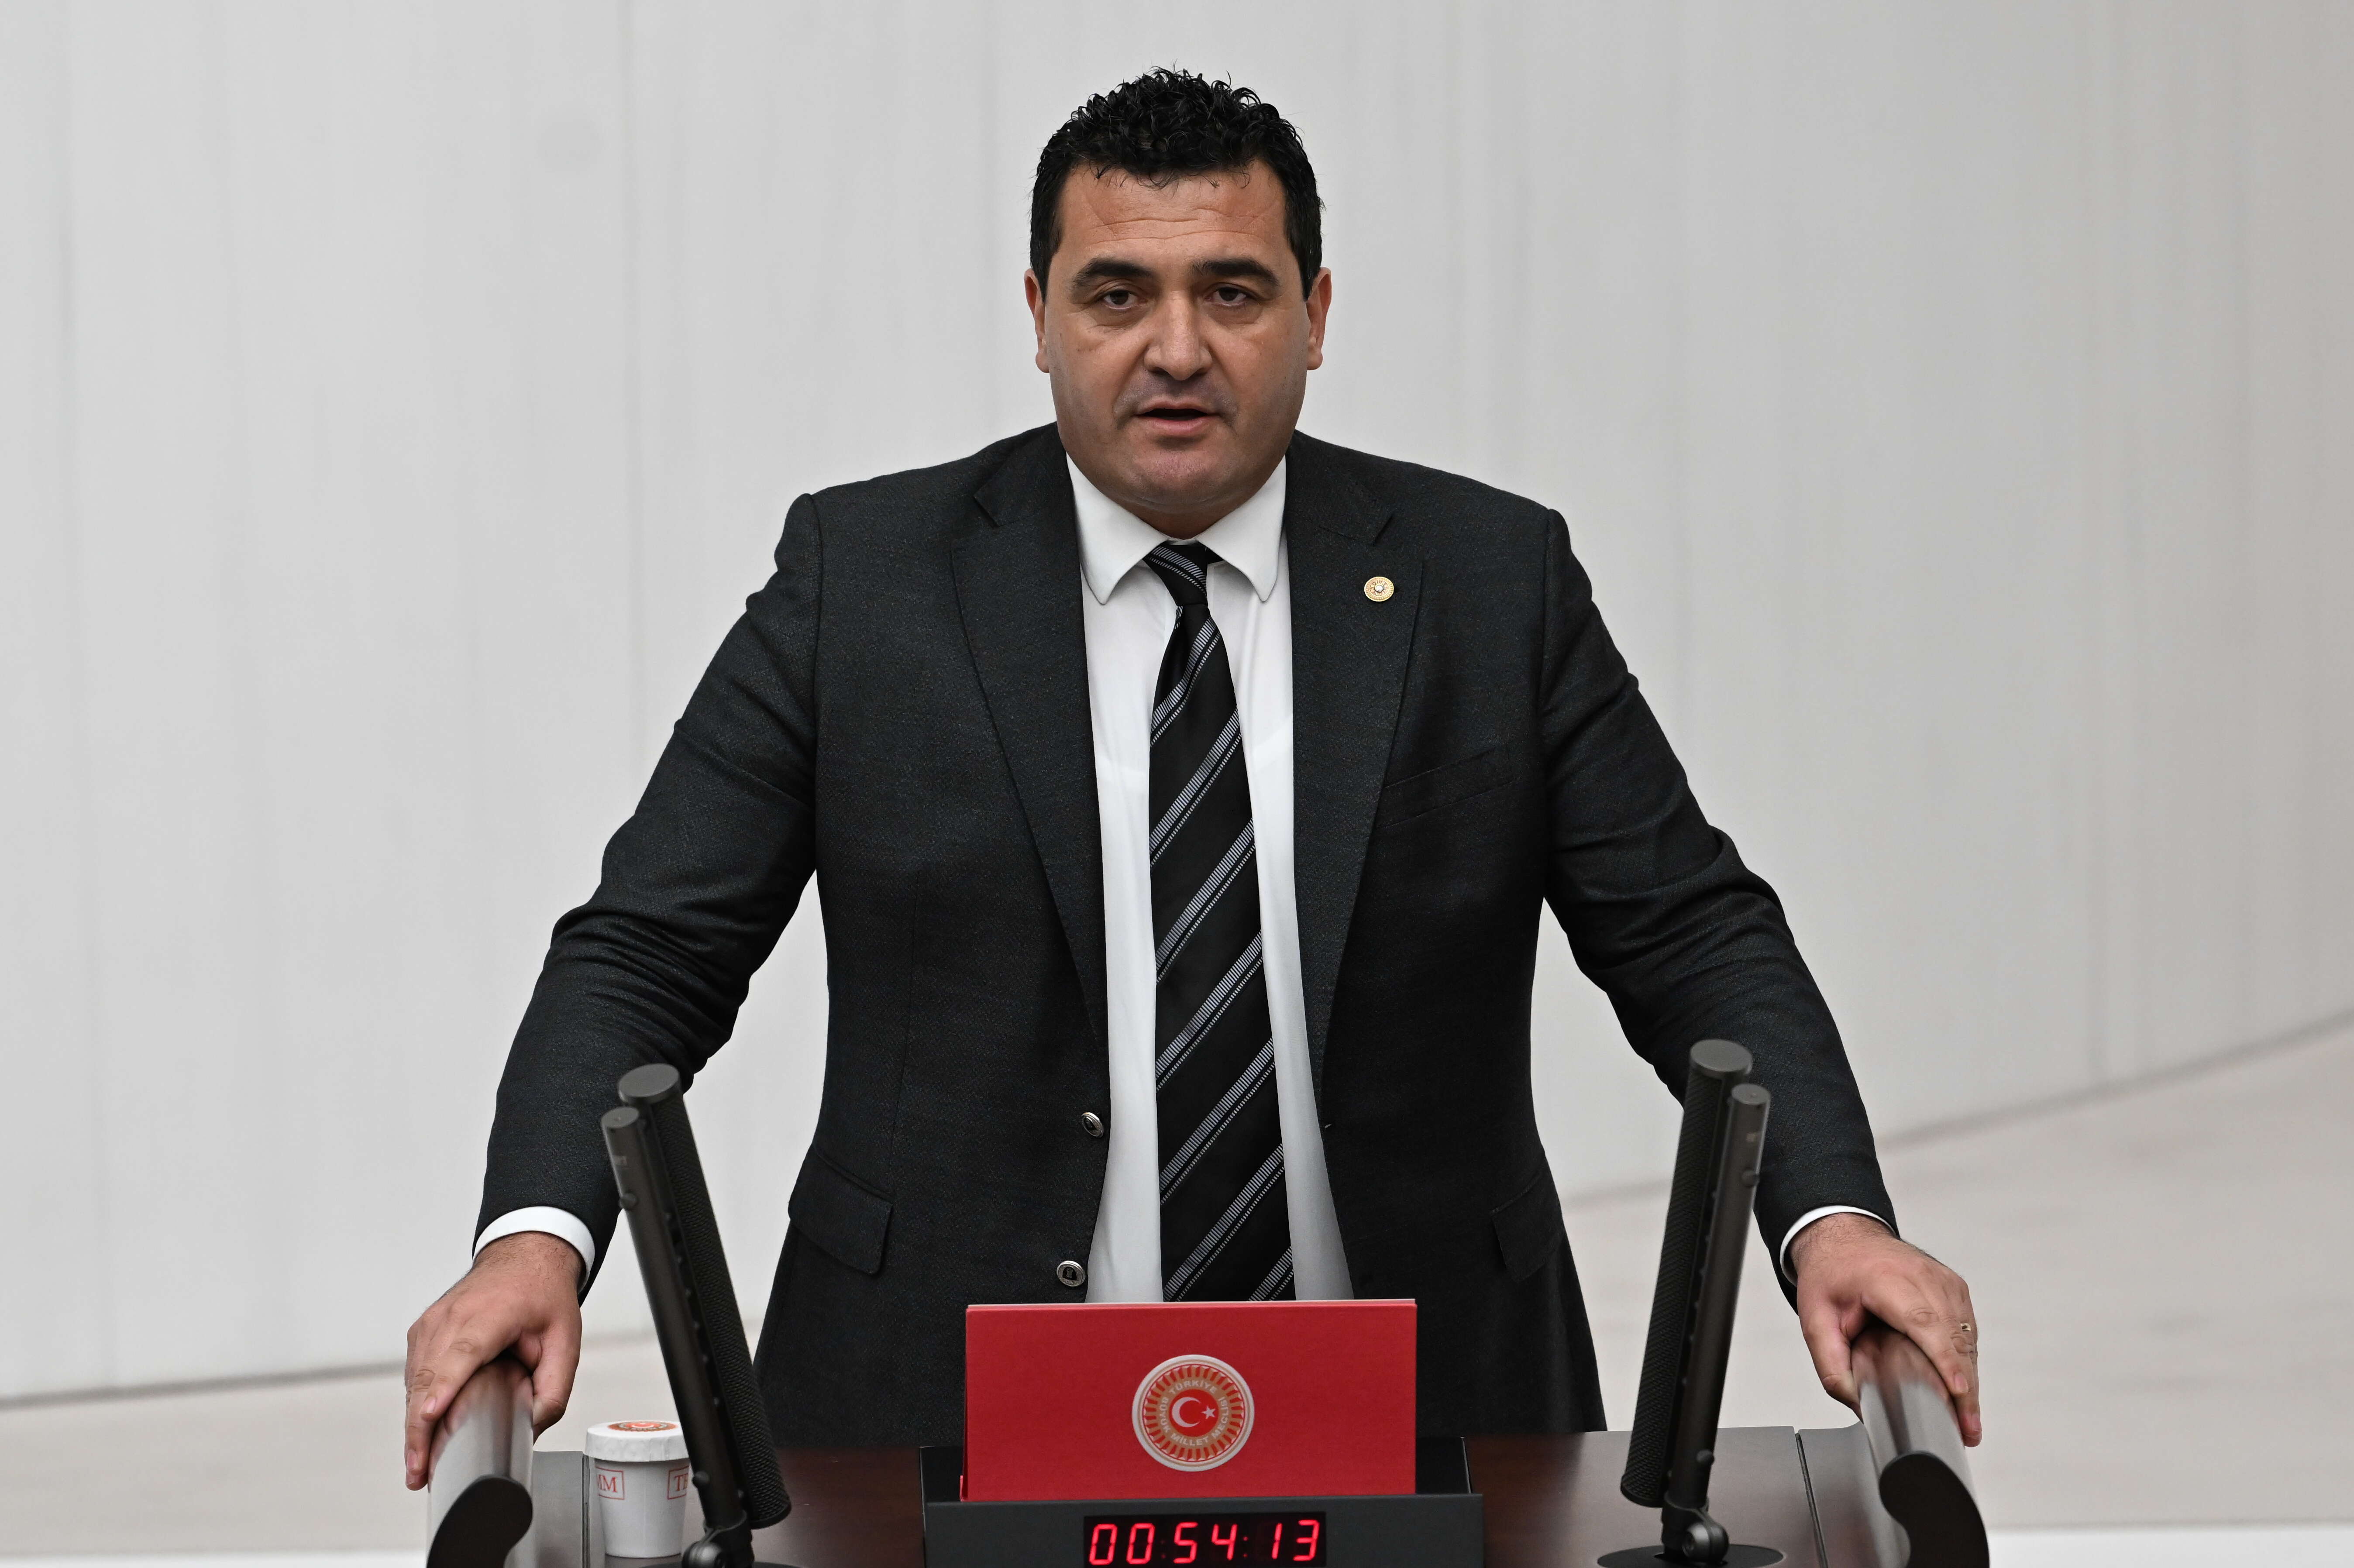 CHP'li Karasu sordu: Başkent'te bu karar siyasi mi?